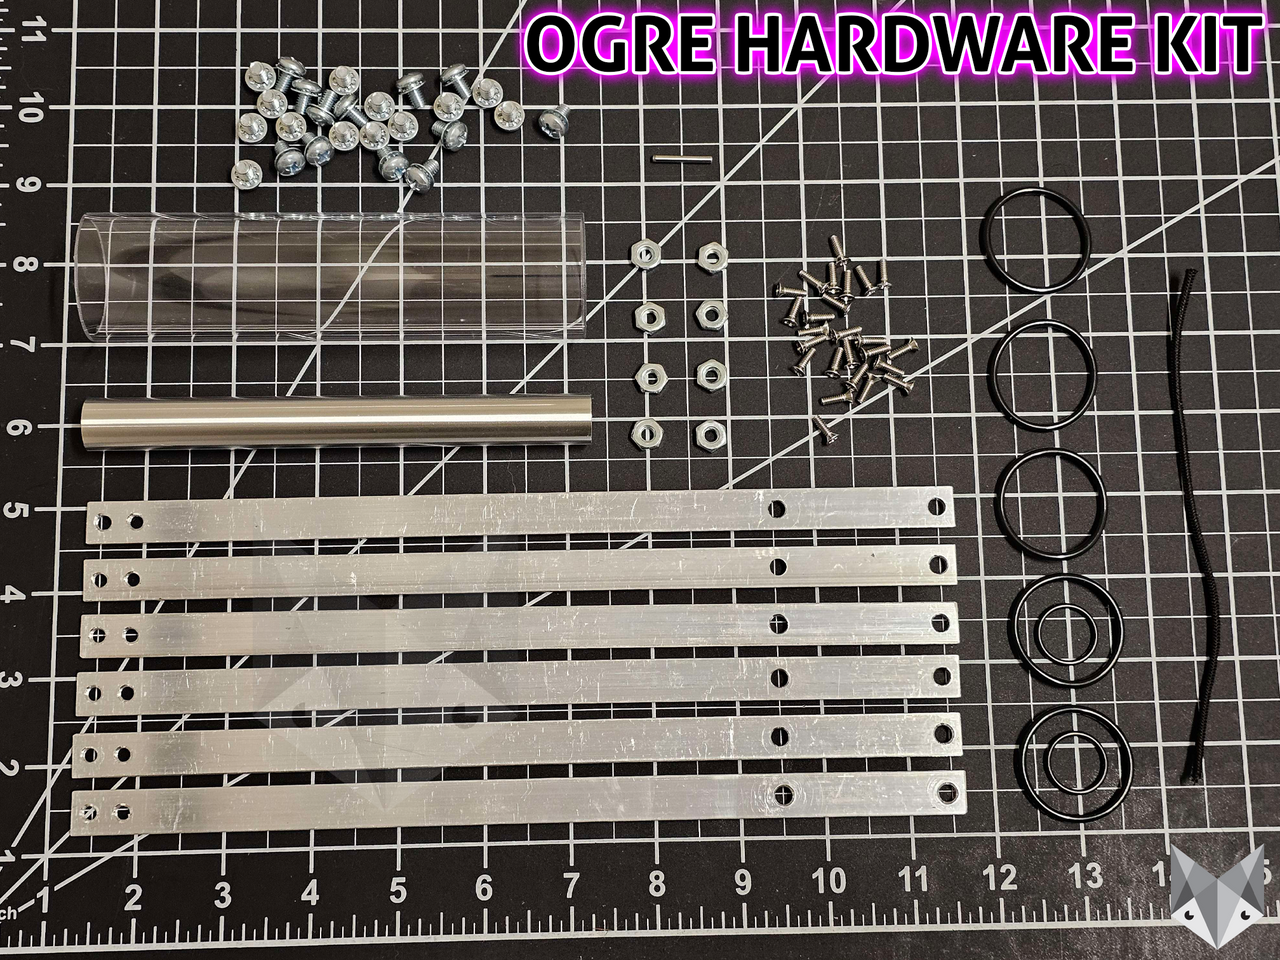 Ogre Hardware Kit